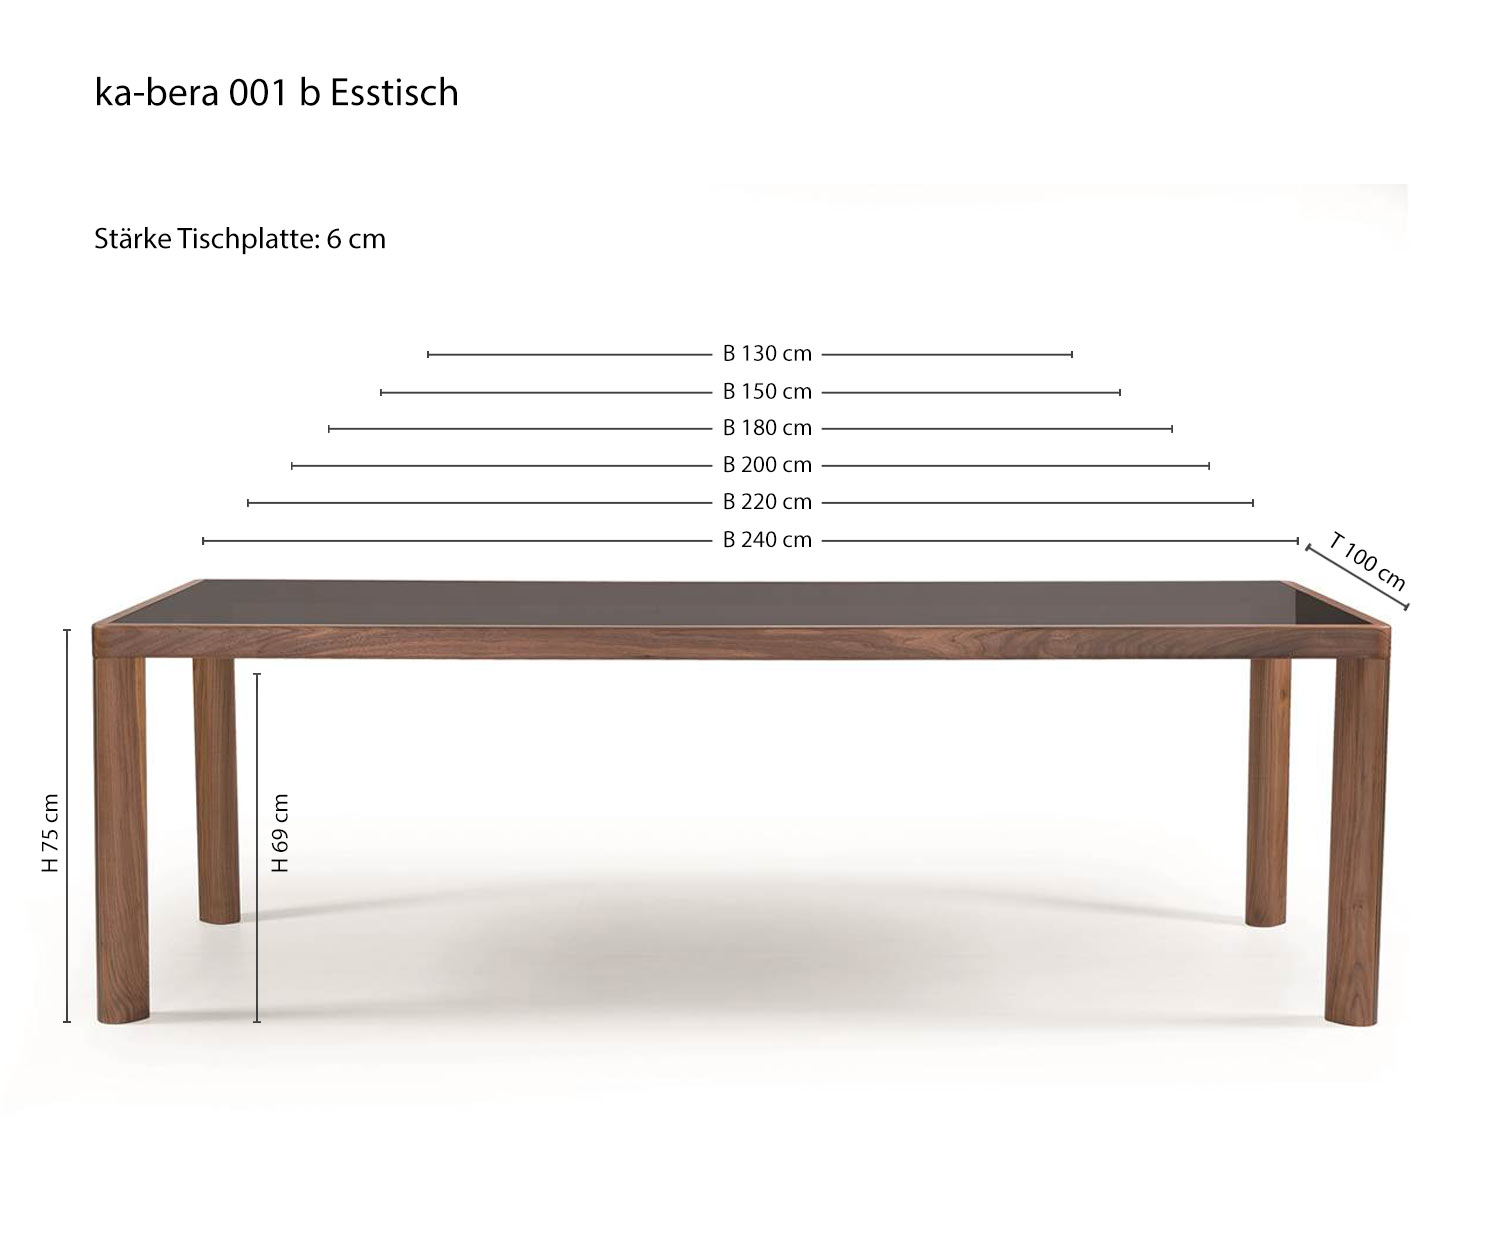 al2 ka-bera 001 b Design dining table glass table top smoke coloured